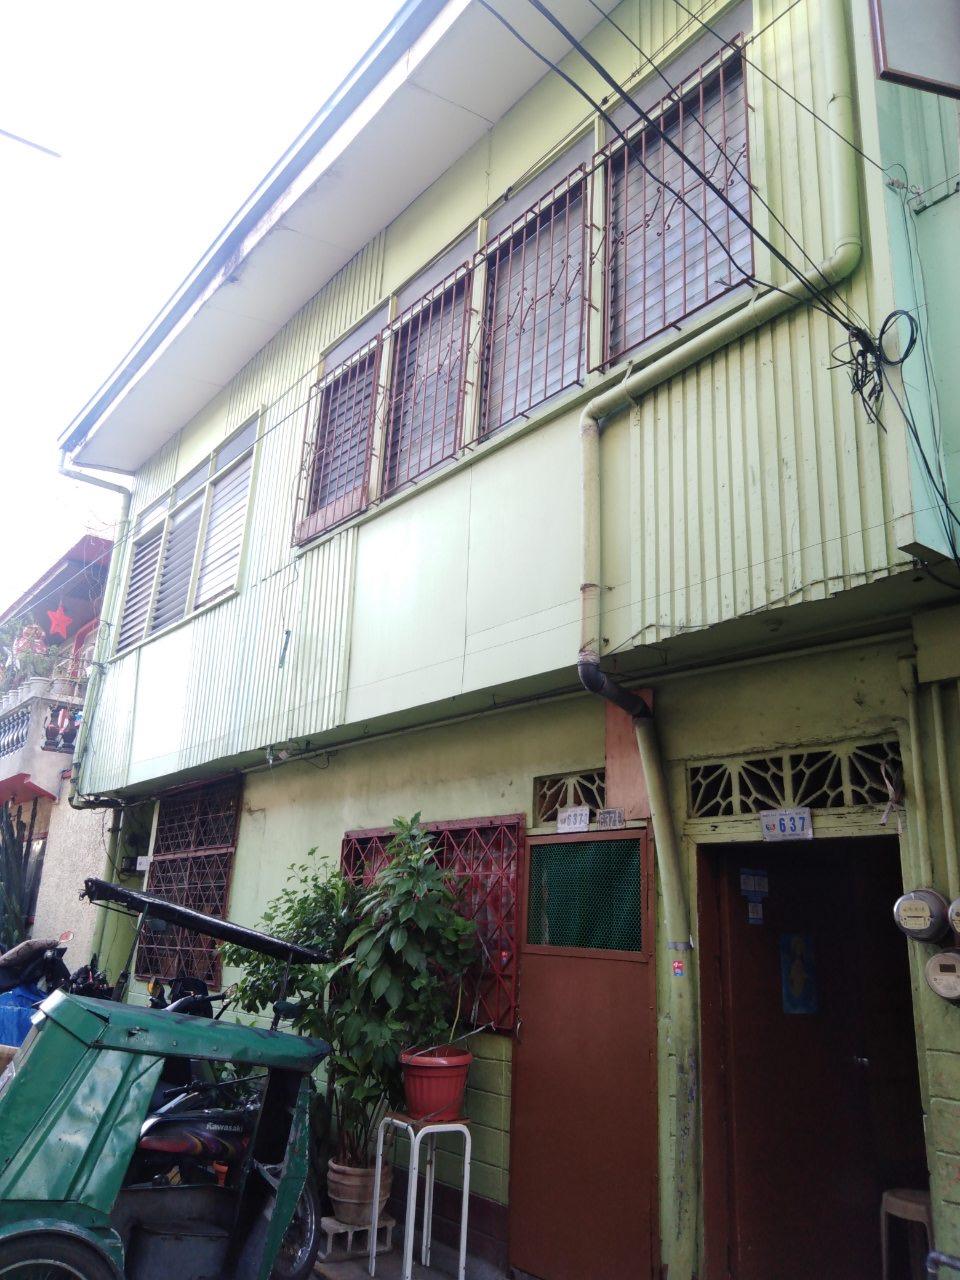 3 Unit Apartment For Sale in Sampaloc Manila